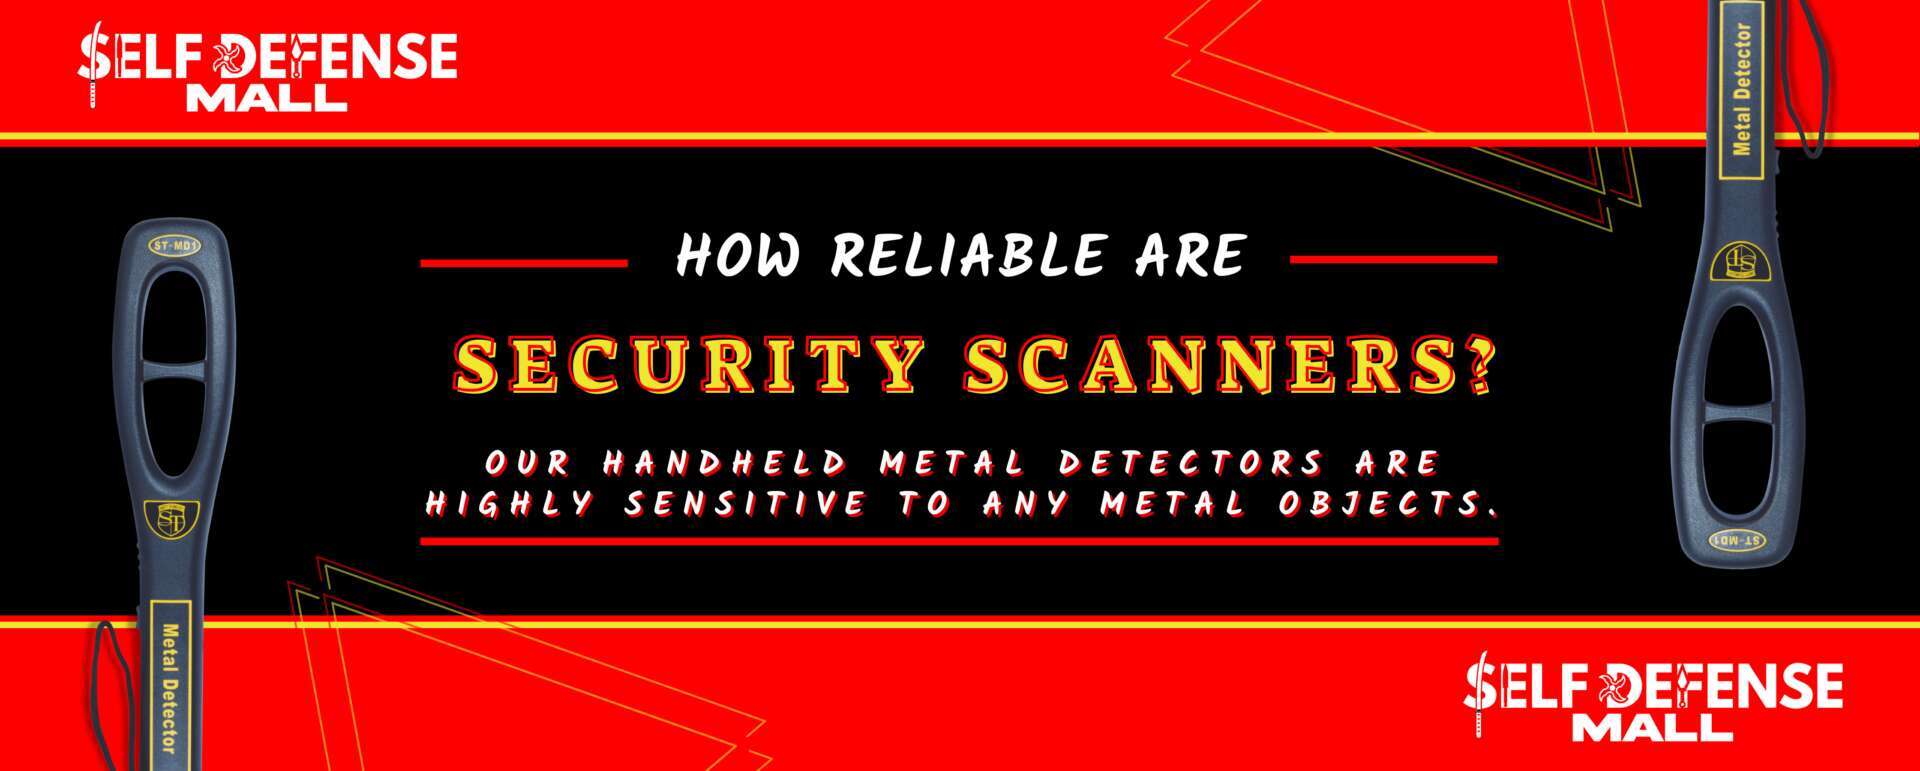 Pro Scan Security Scanner Hand Held Metal Detector